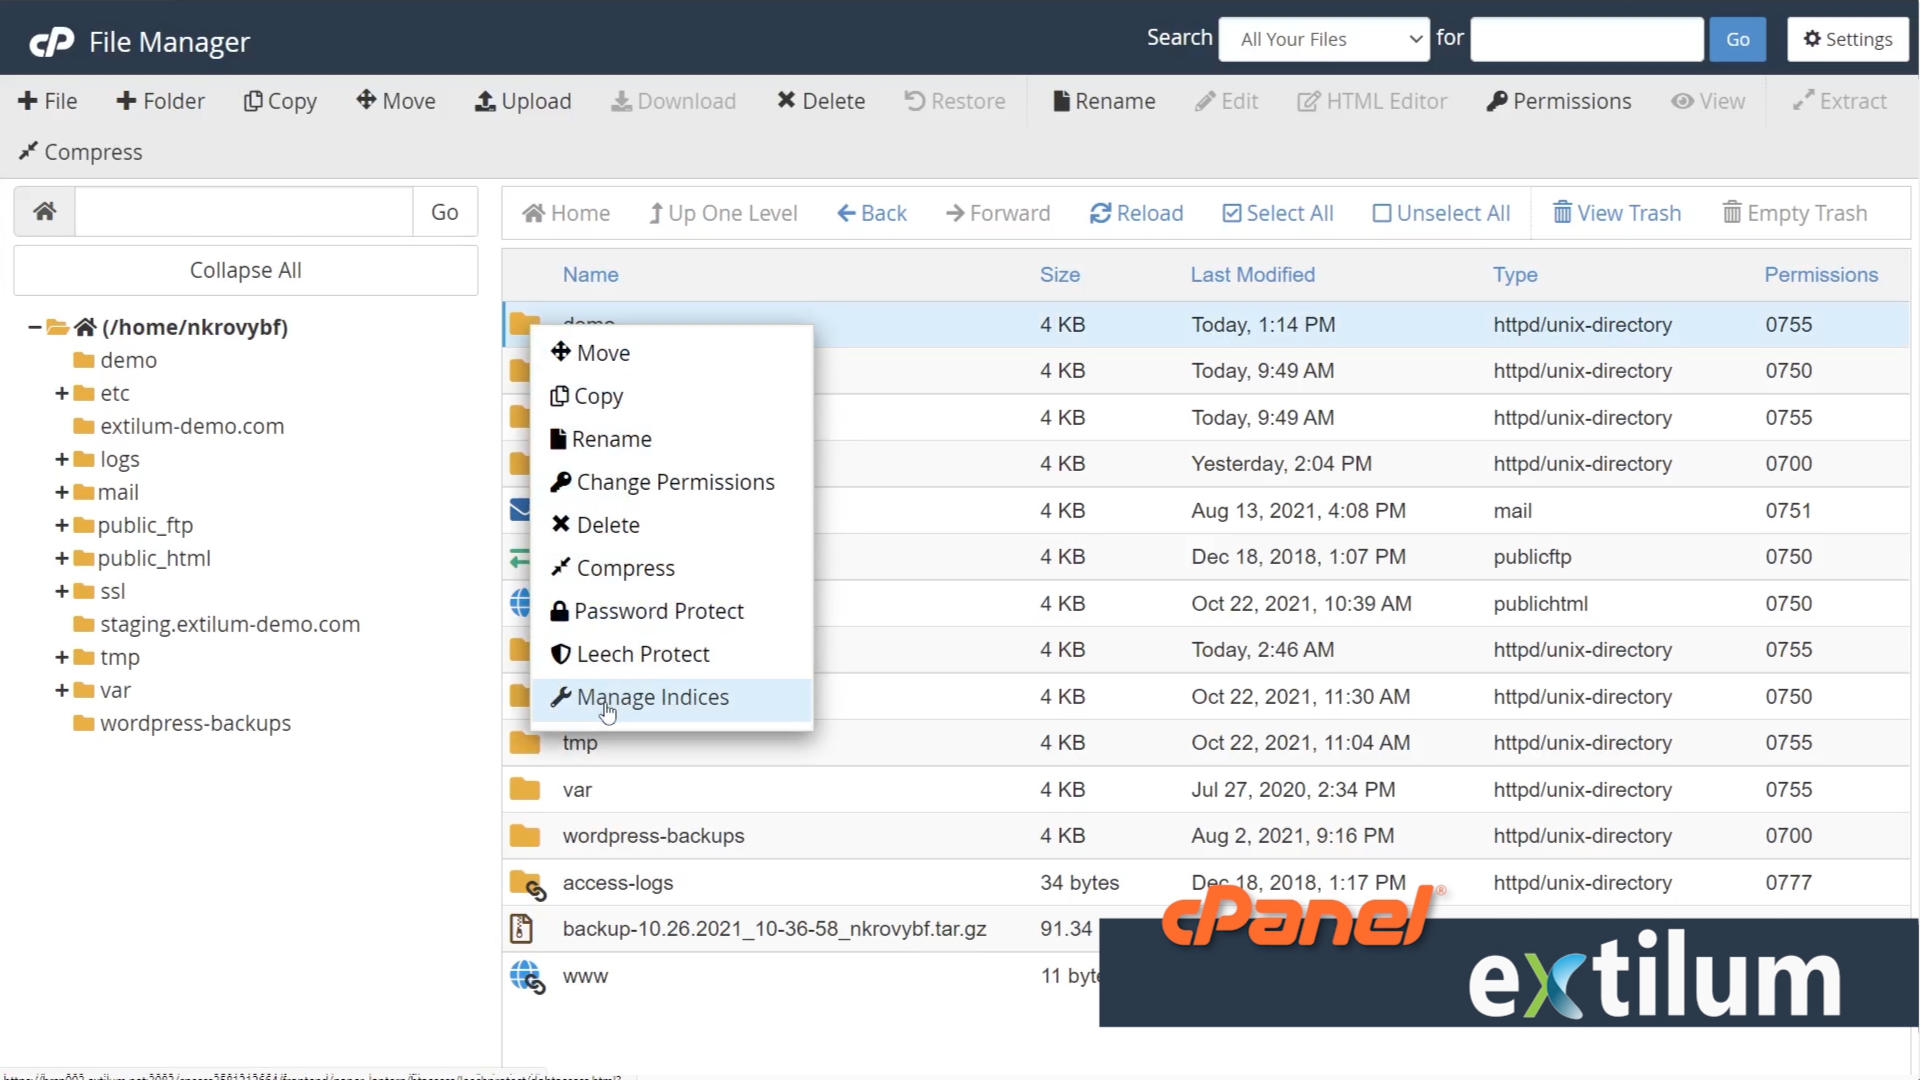 Extilum cPanel - File Manager - Manage indicies